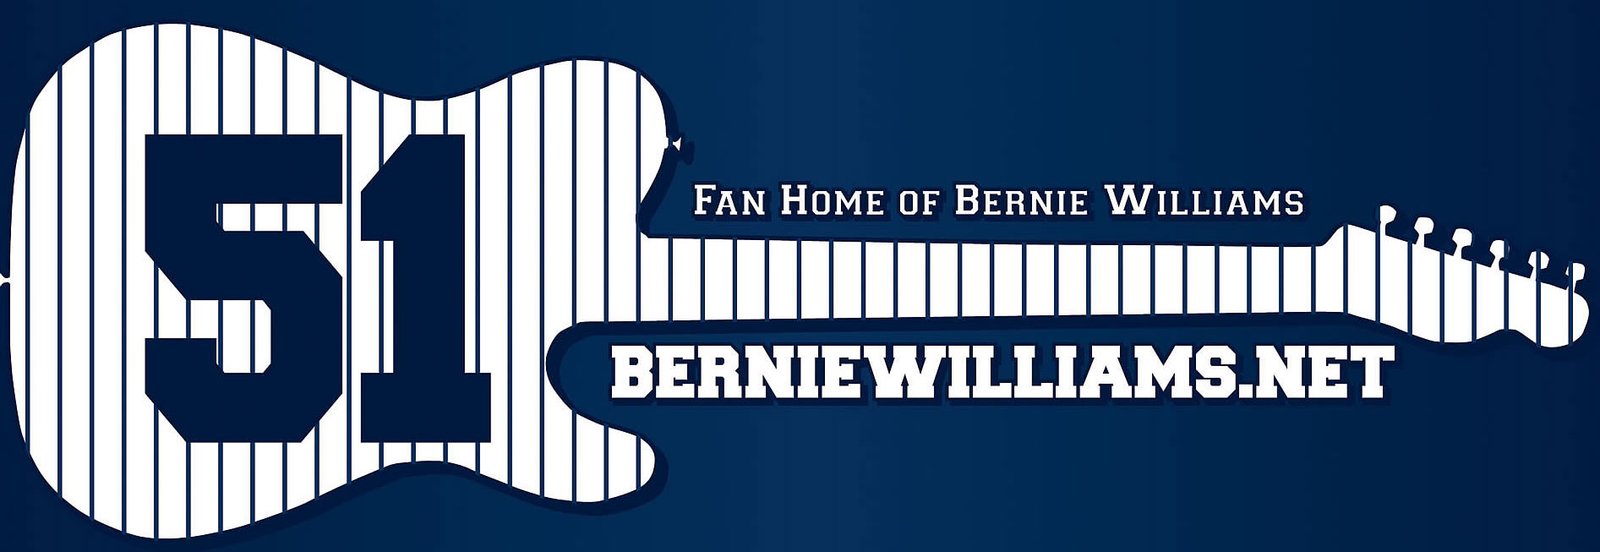 Bernie Williams Fans Site